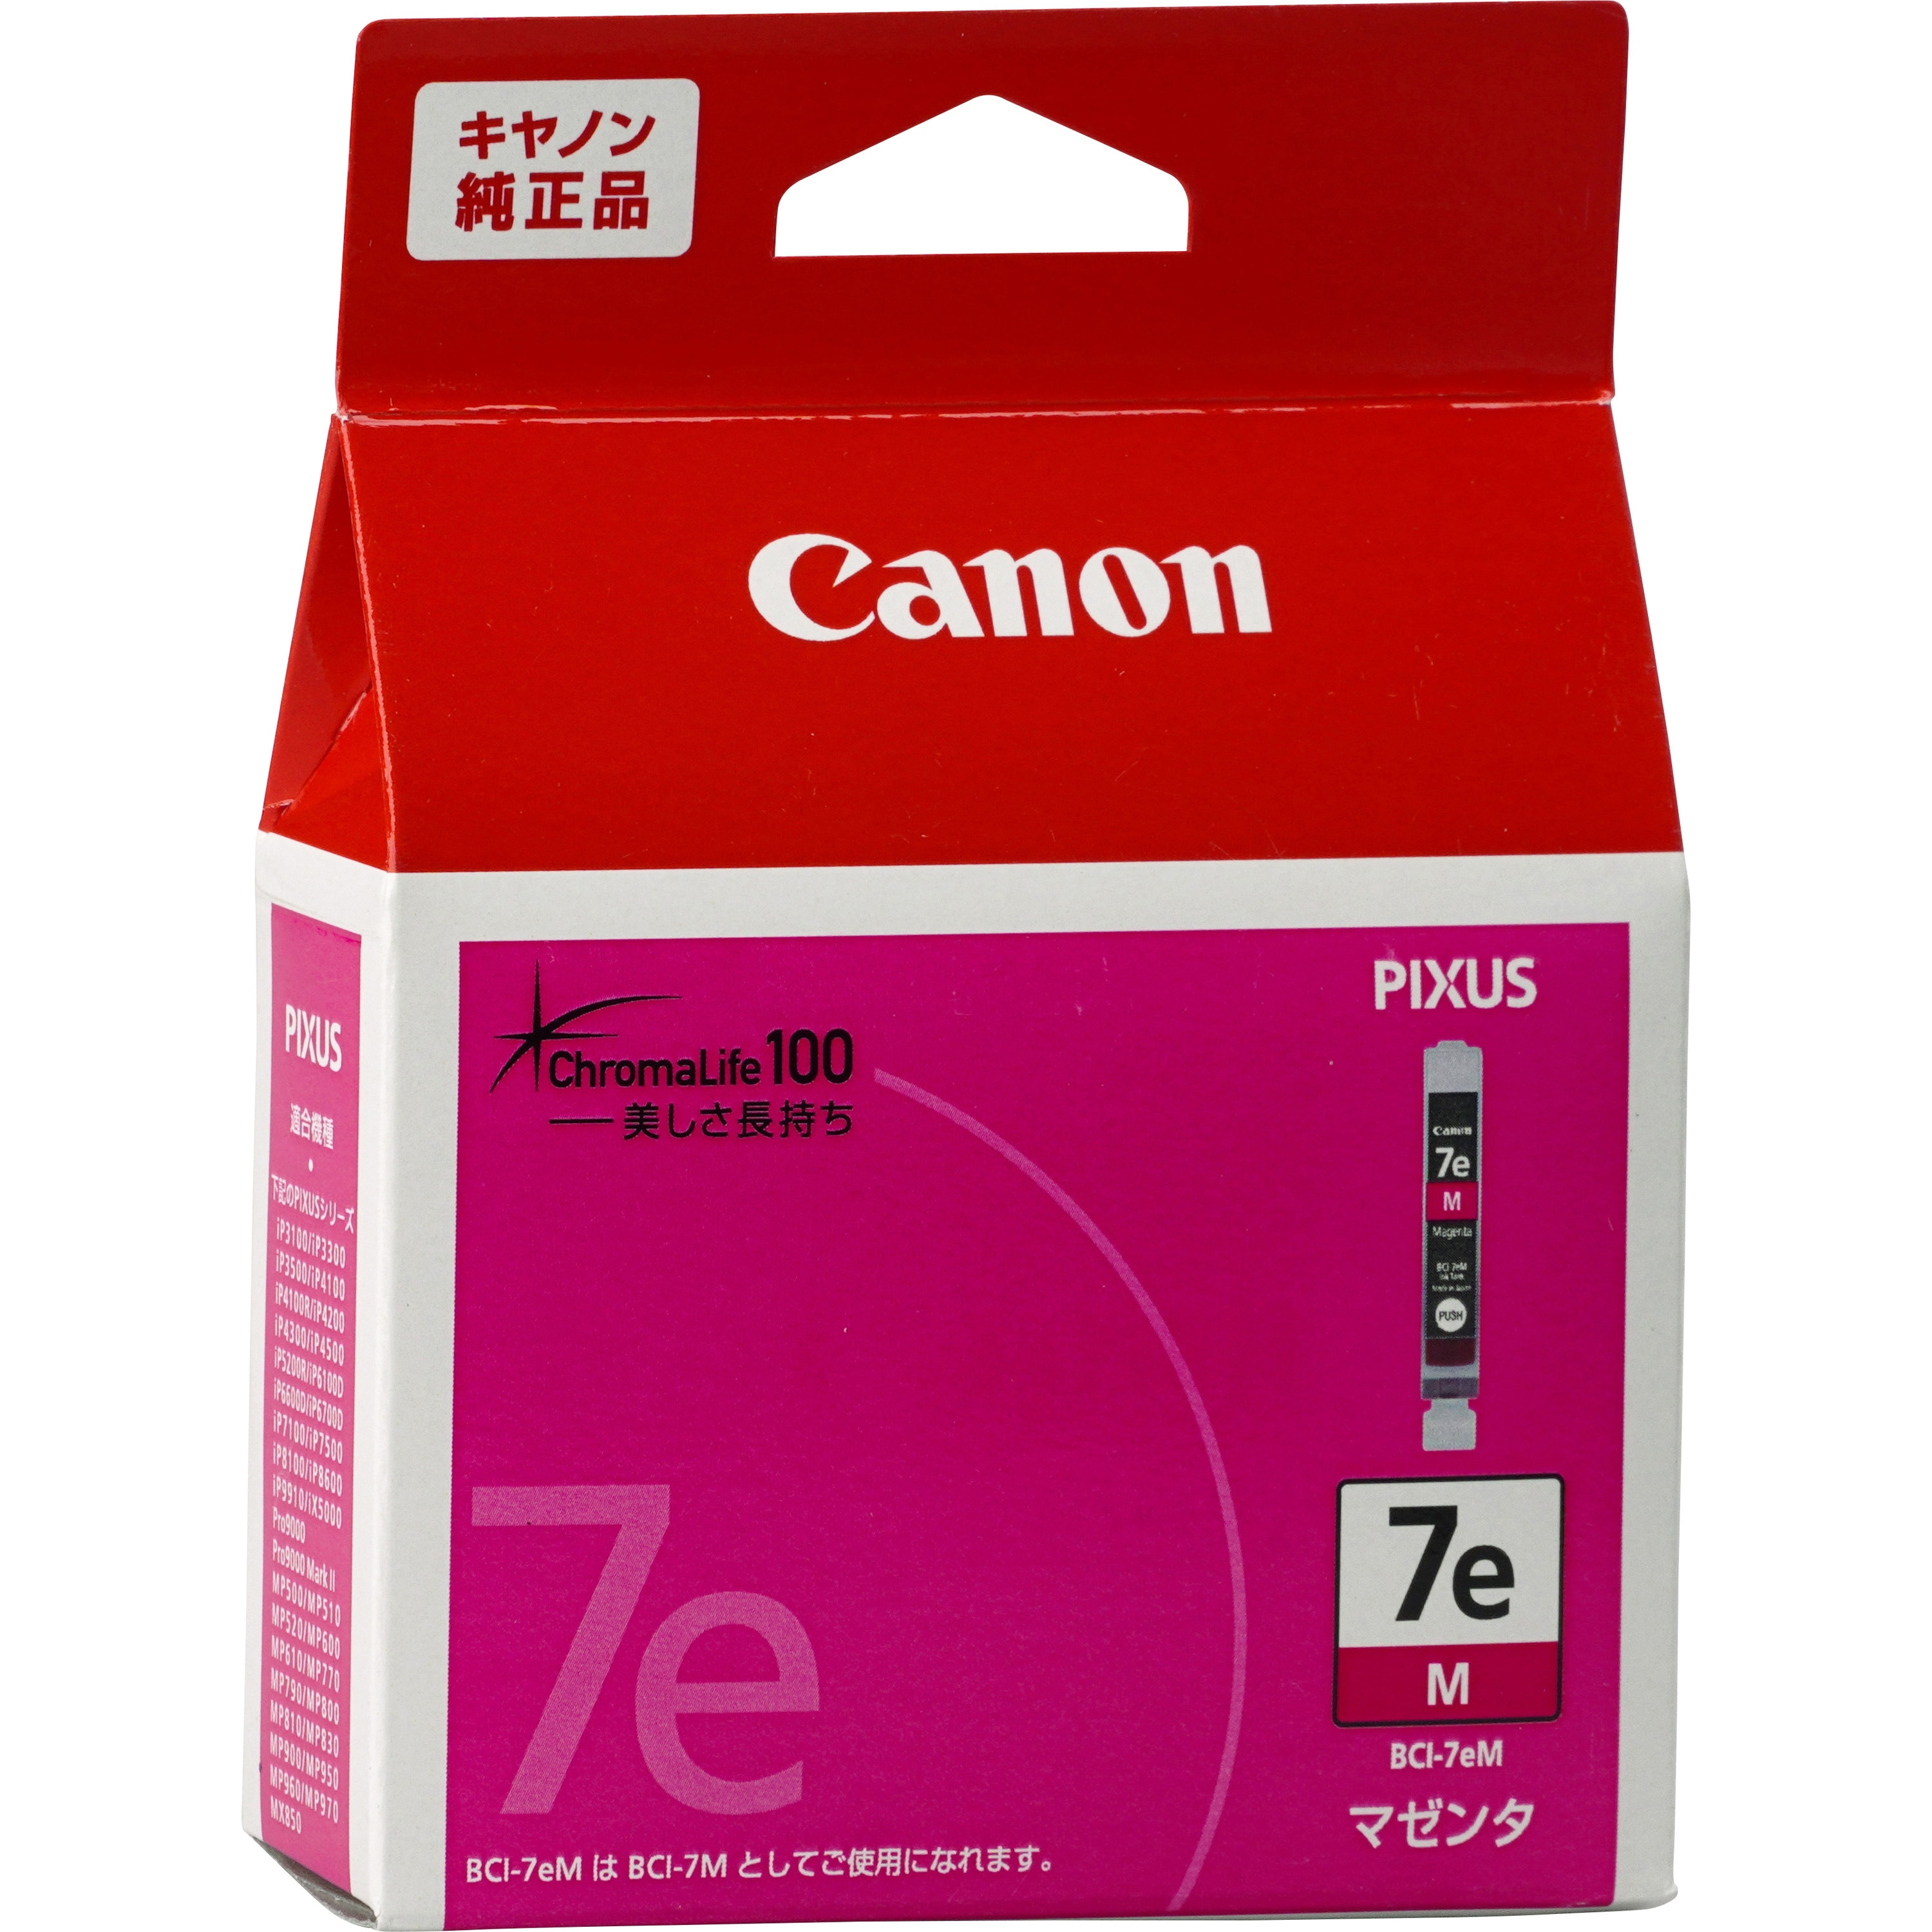 キャノン 純正品 Canon BCI-7epc プリンター インク